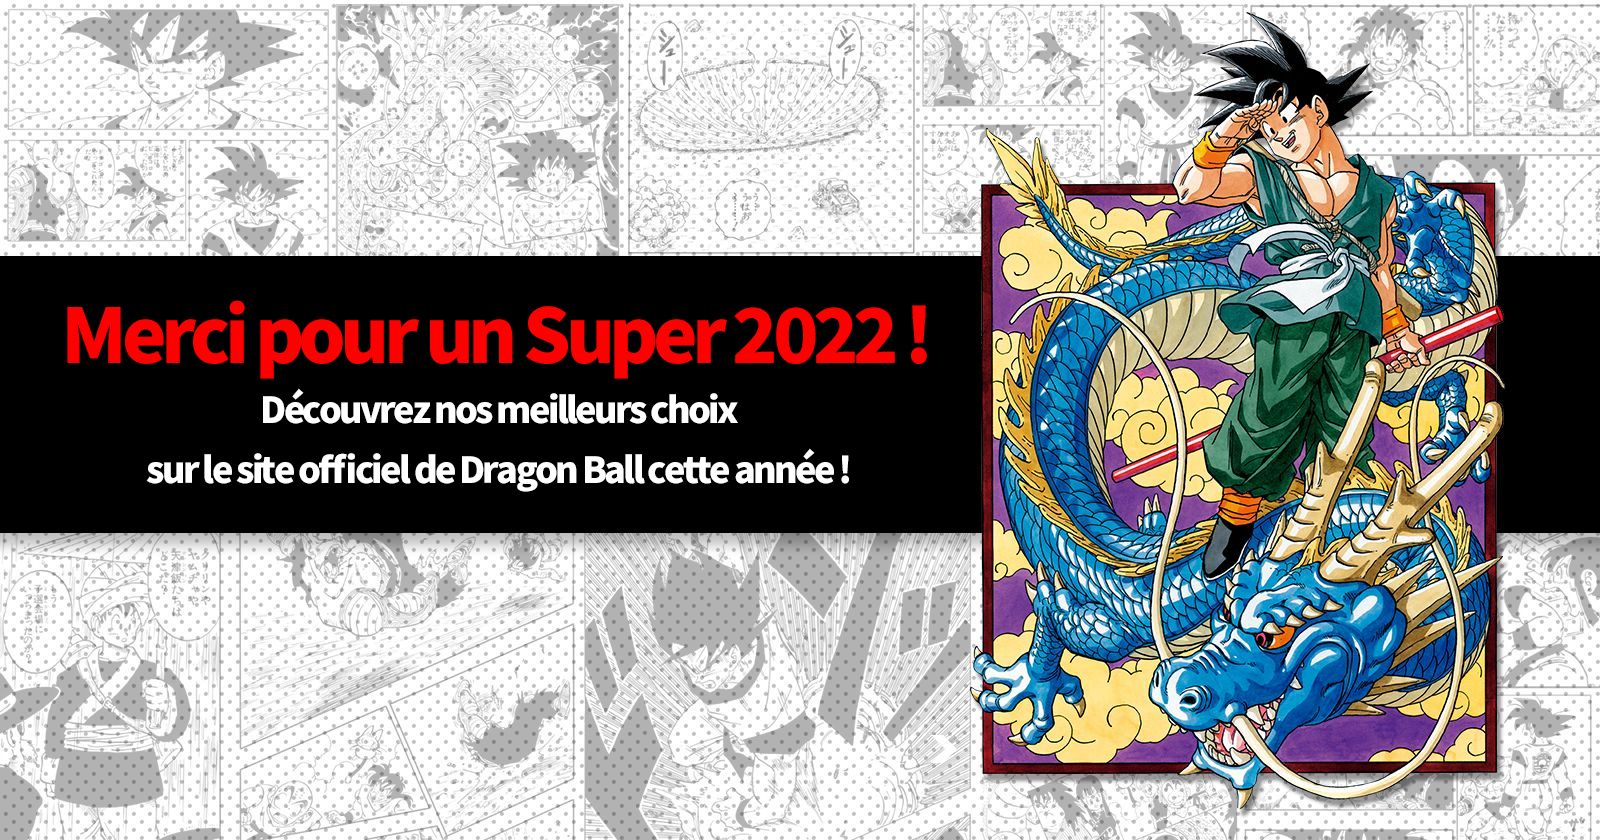 Merci pour un Super 2022 ! Découvrez nos meilleurs choix sur le site officiel de Dragon Ball cette année !